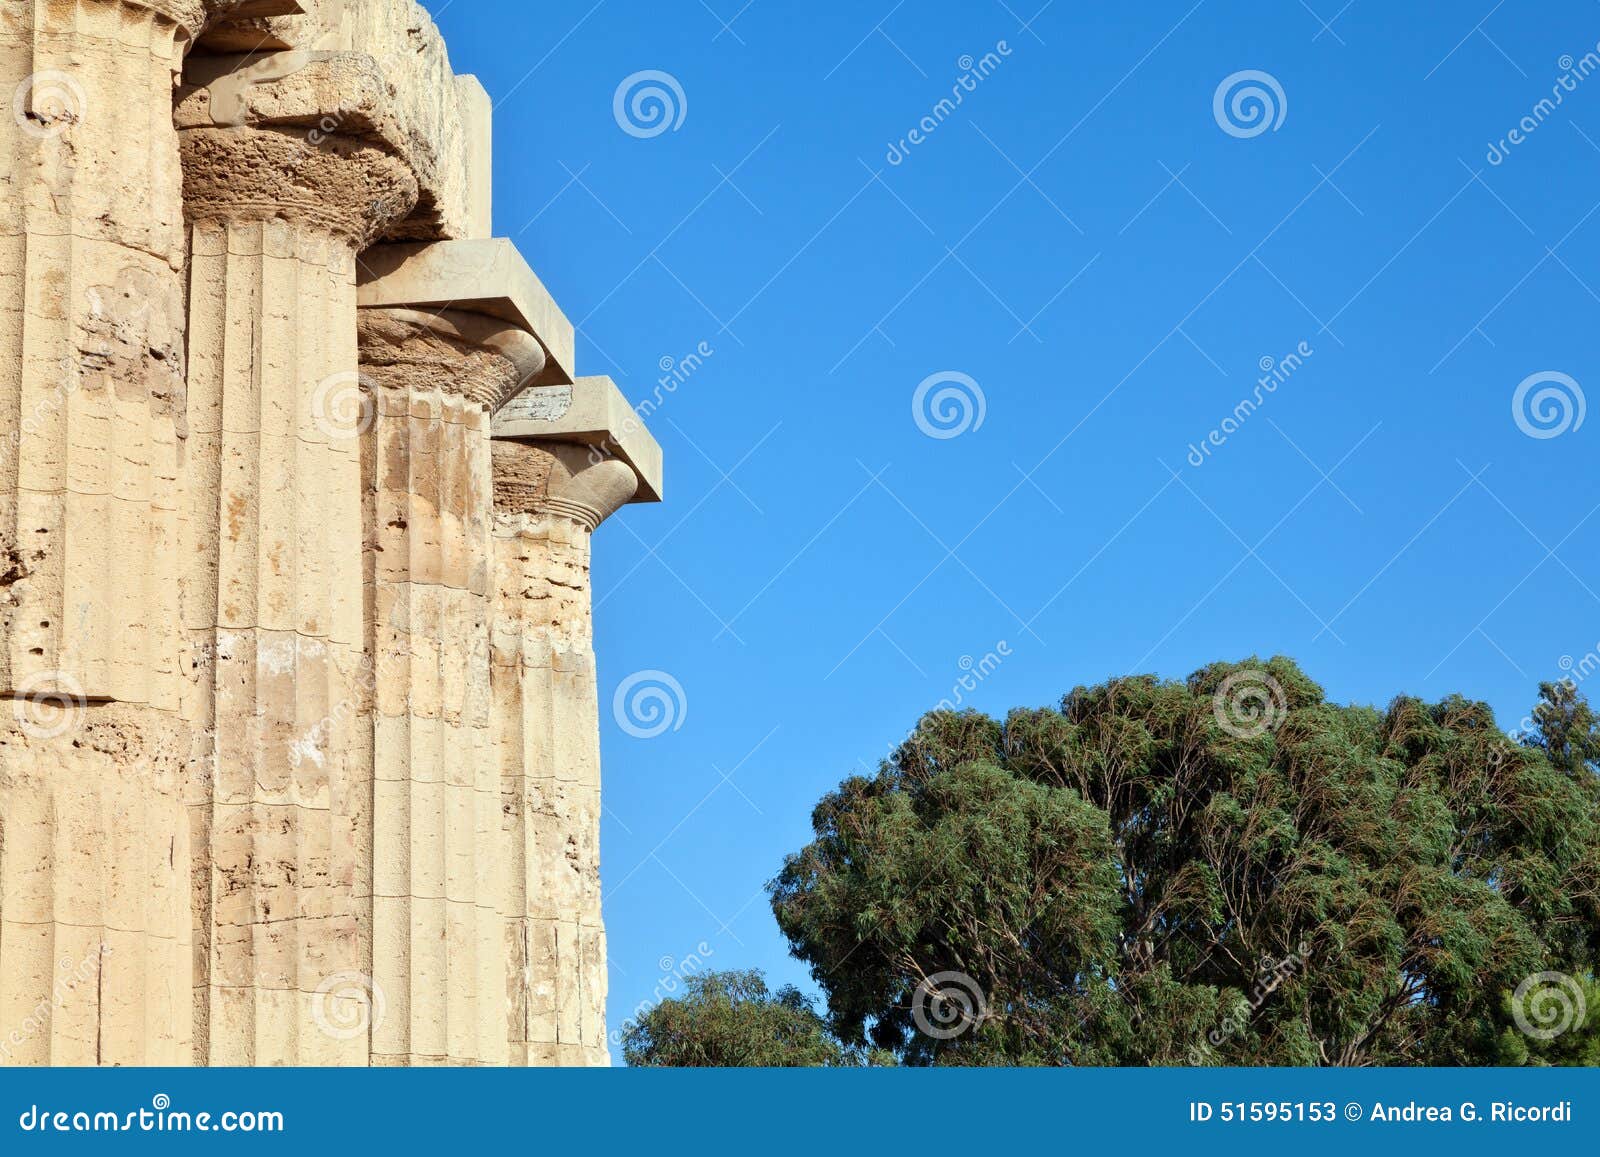 greek columns in selinunte